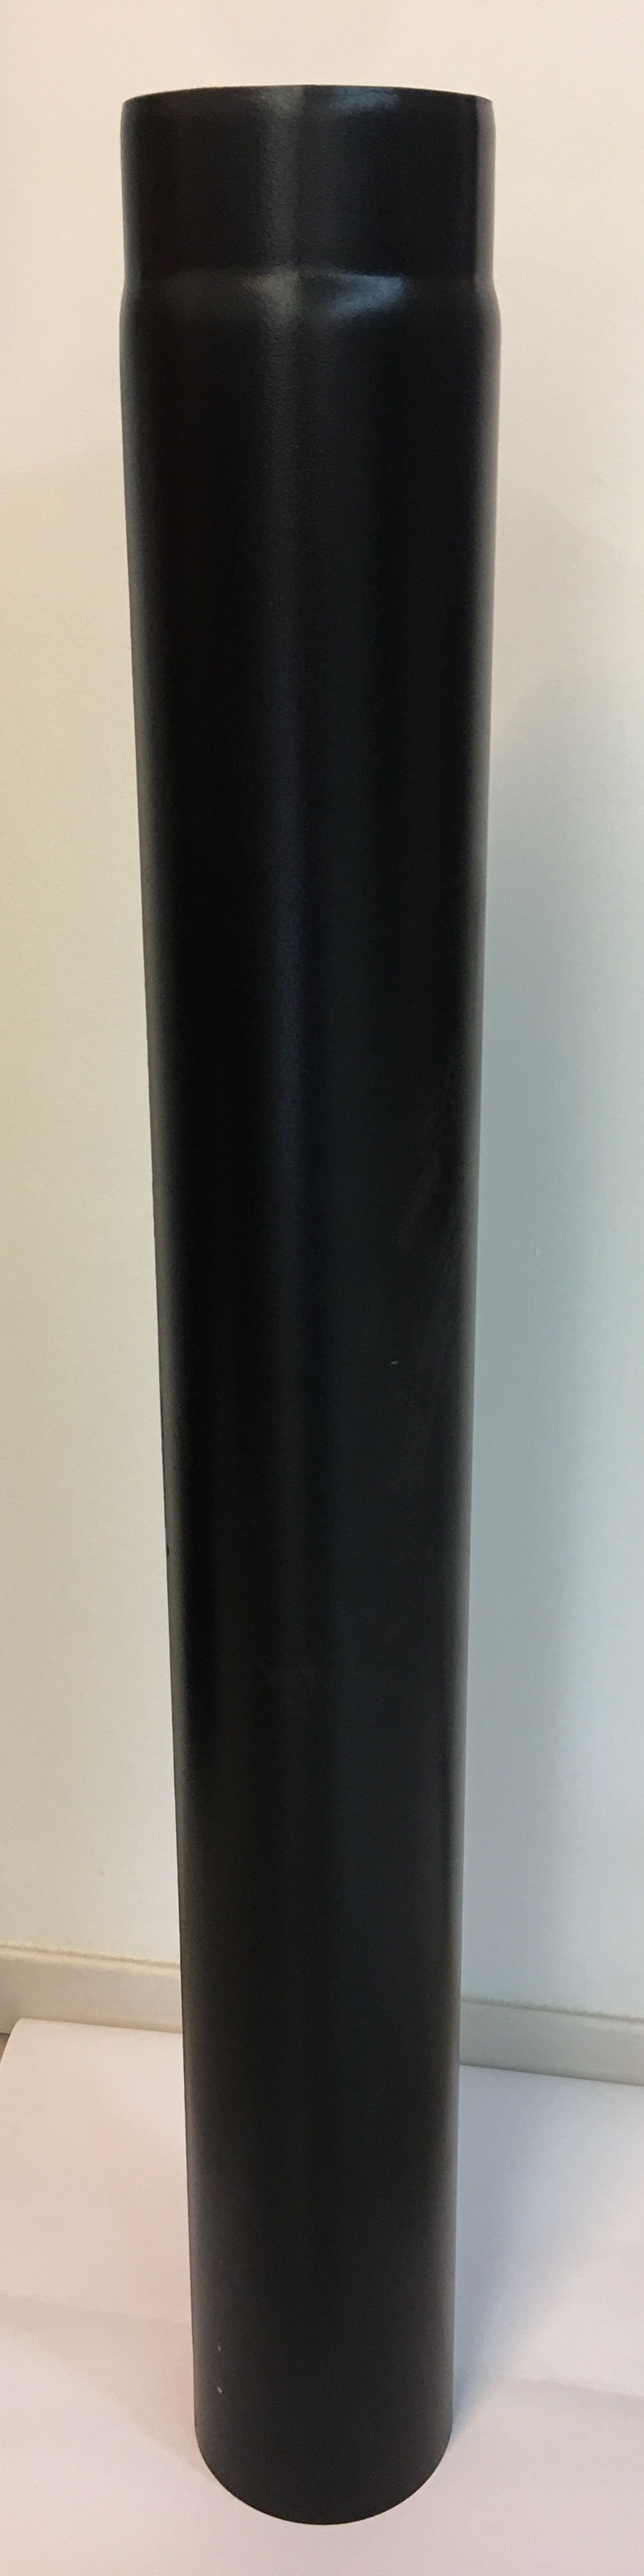 Vastagfalú füstcső, fekete. Átmérője 150 mm, hossza 1000 mm